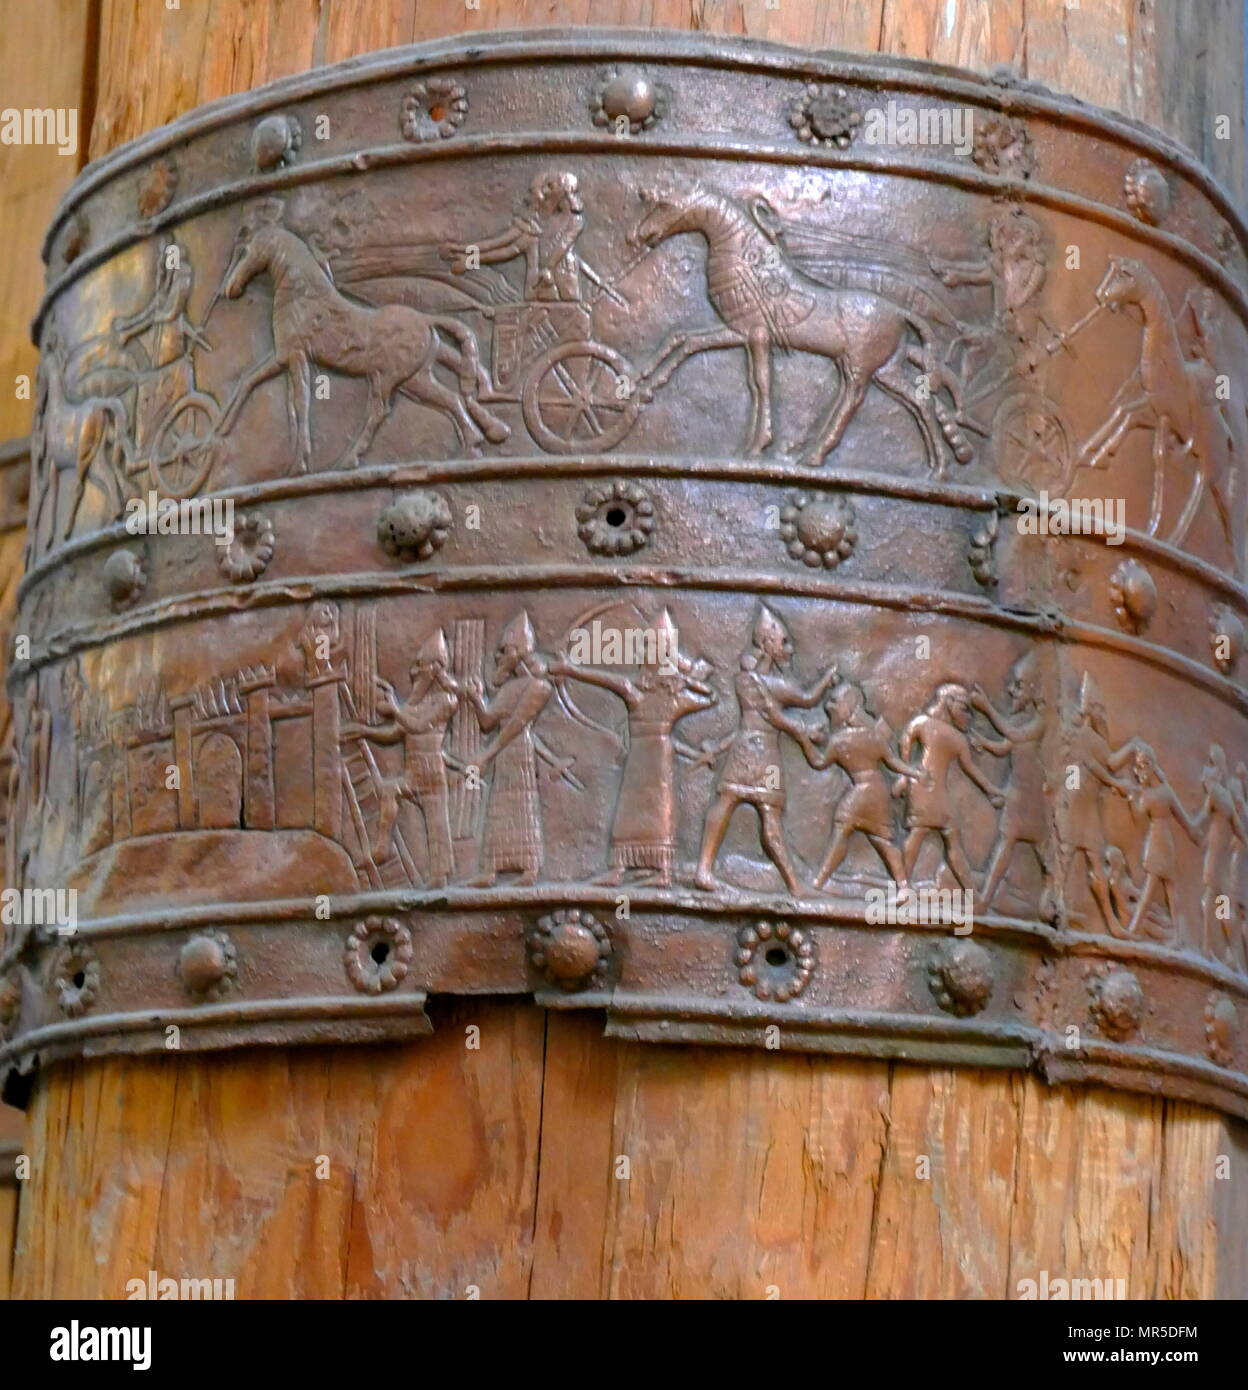 Il ricostruito Balawat Gates che adornano le porte principali di diversi edifici a Balawat (antica Imgur-Enlil), risalente al regna di Ashurnasirpal II (r. 883-859 BC) e Shalmaneser III (r. 859-824 a.C.). Il loro uso estensivo di arte narrativa che ritraggono le gesta del re di Assiria ha cementato la loro posizione di alcune delle più importanti opere superstiti di arte del Neo-Assyrian Impero. Quando l'impero Neo-Assyrian cadde nel 614-612 A.C. Balawat fu distrutta. Foto Stock